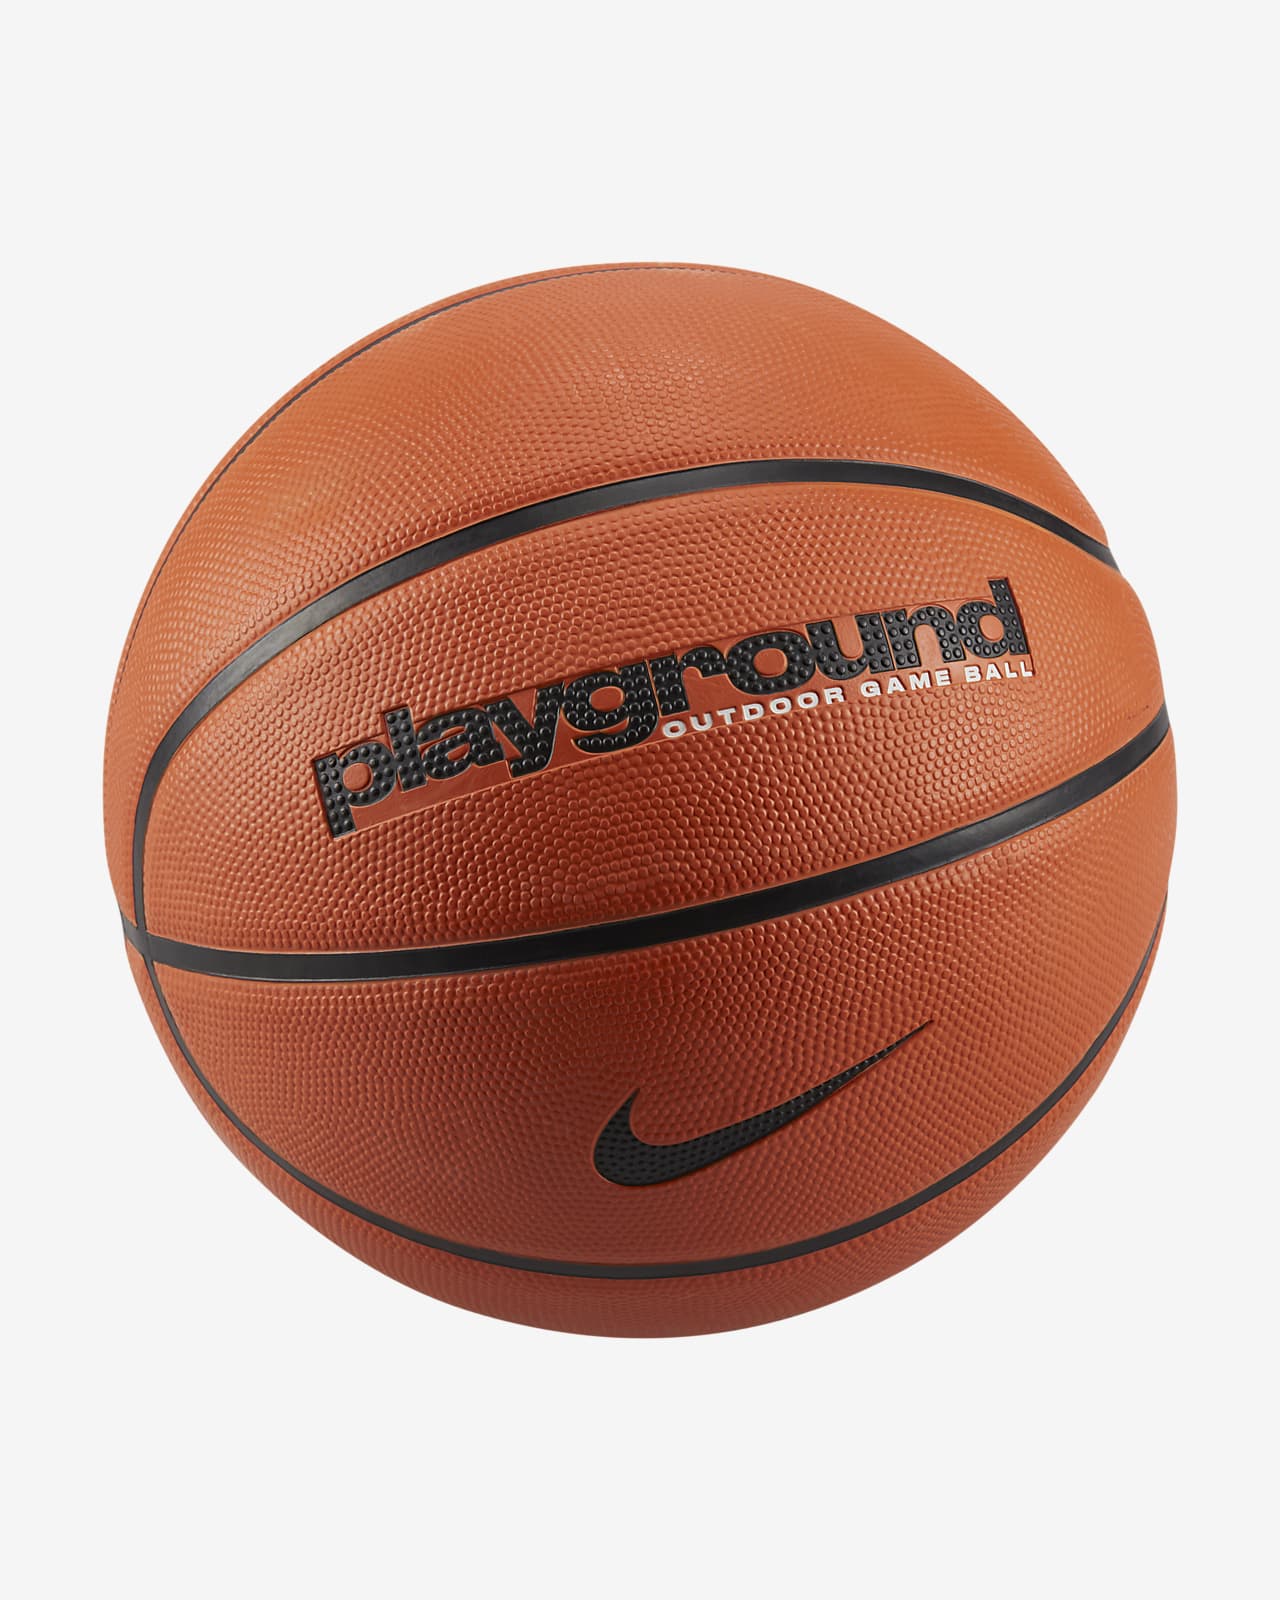 Nike Everyday Playground 8P Basketball (Deflated). Nike LU